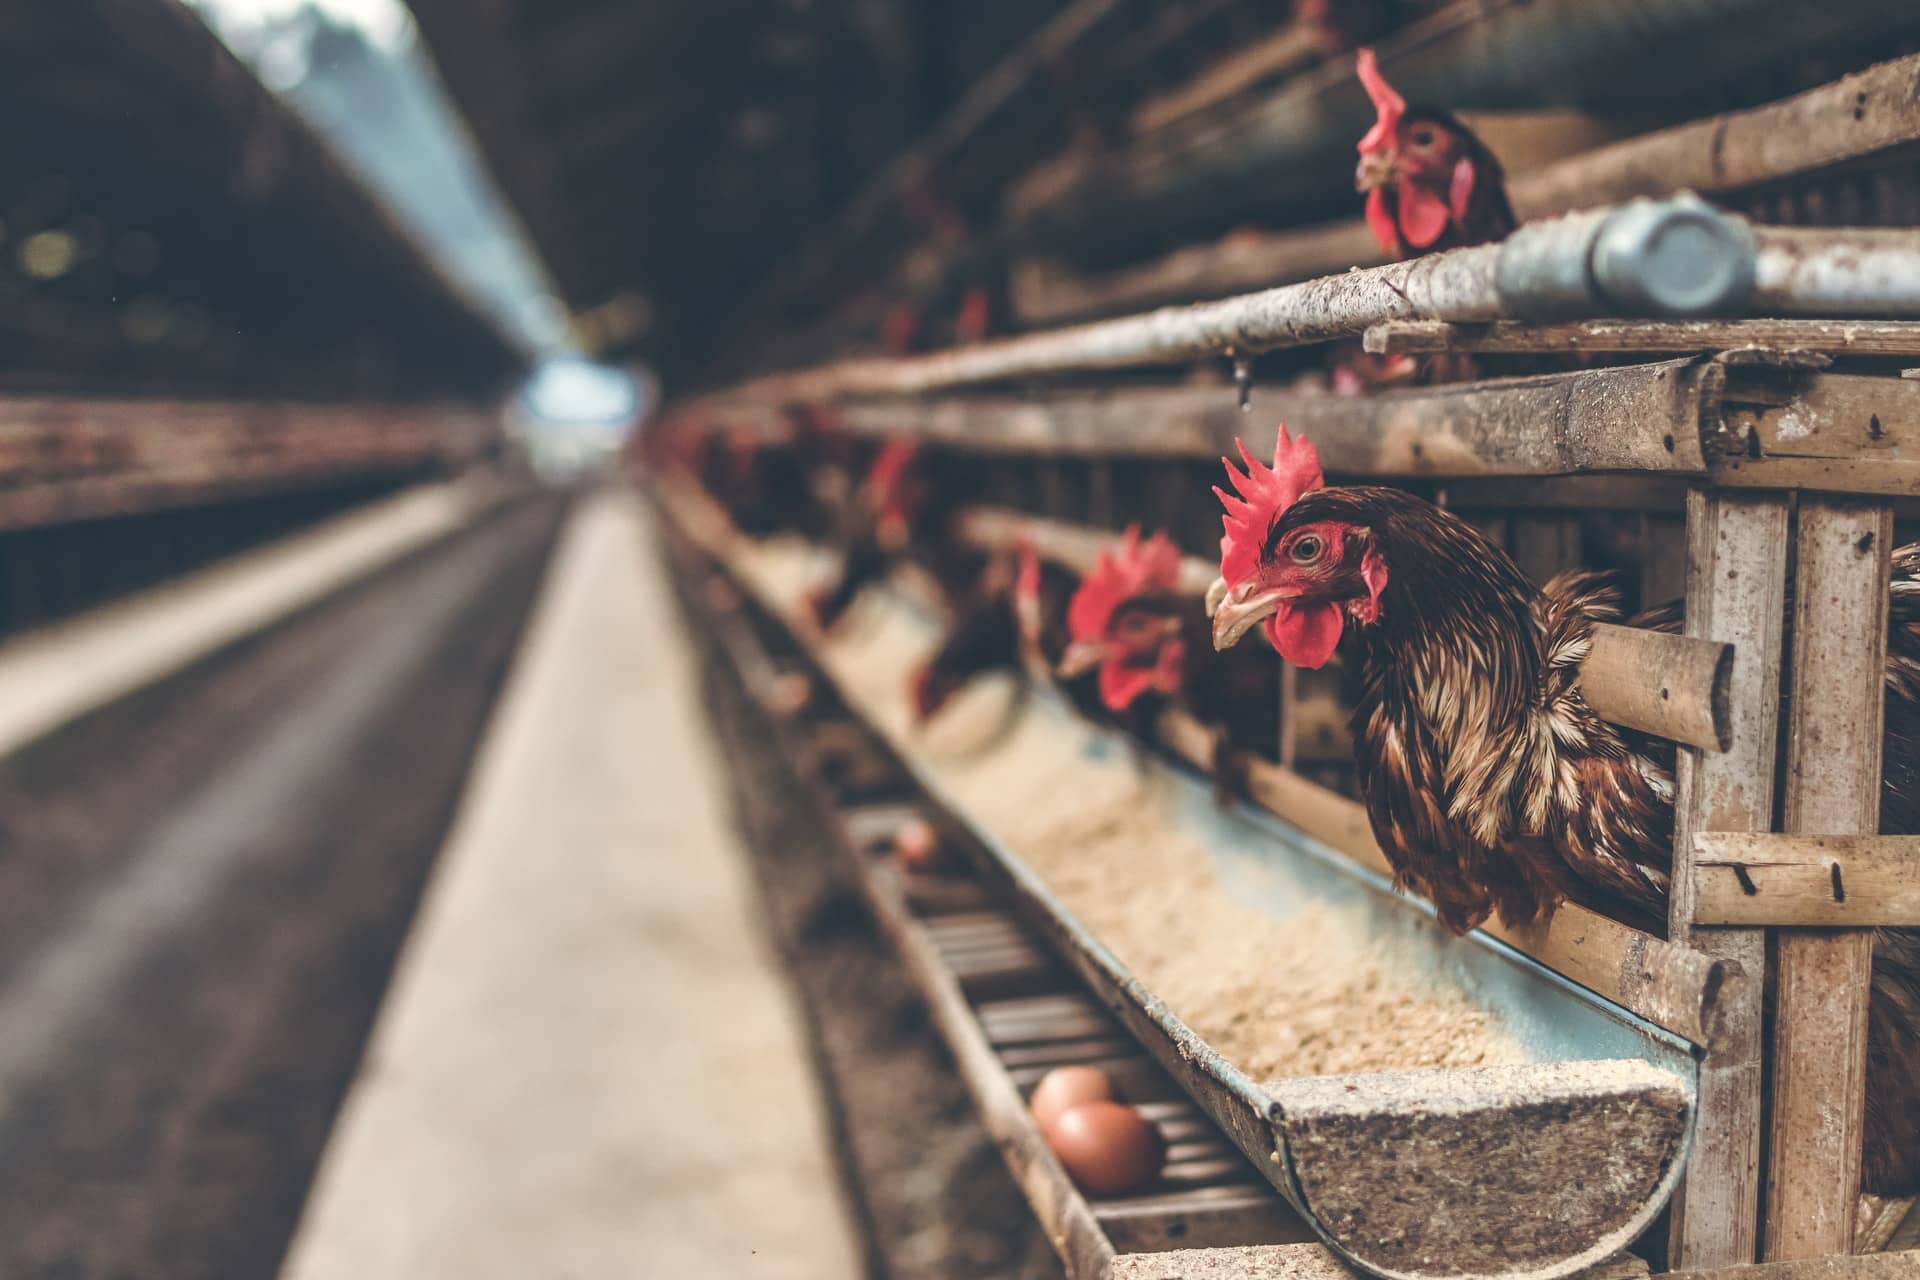 Bezárt egy csirkefarm a koronavírus miatt